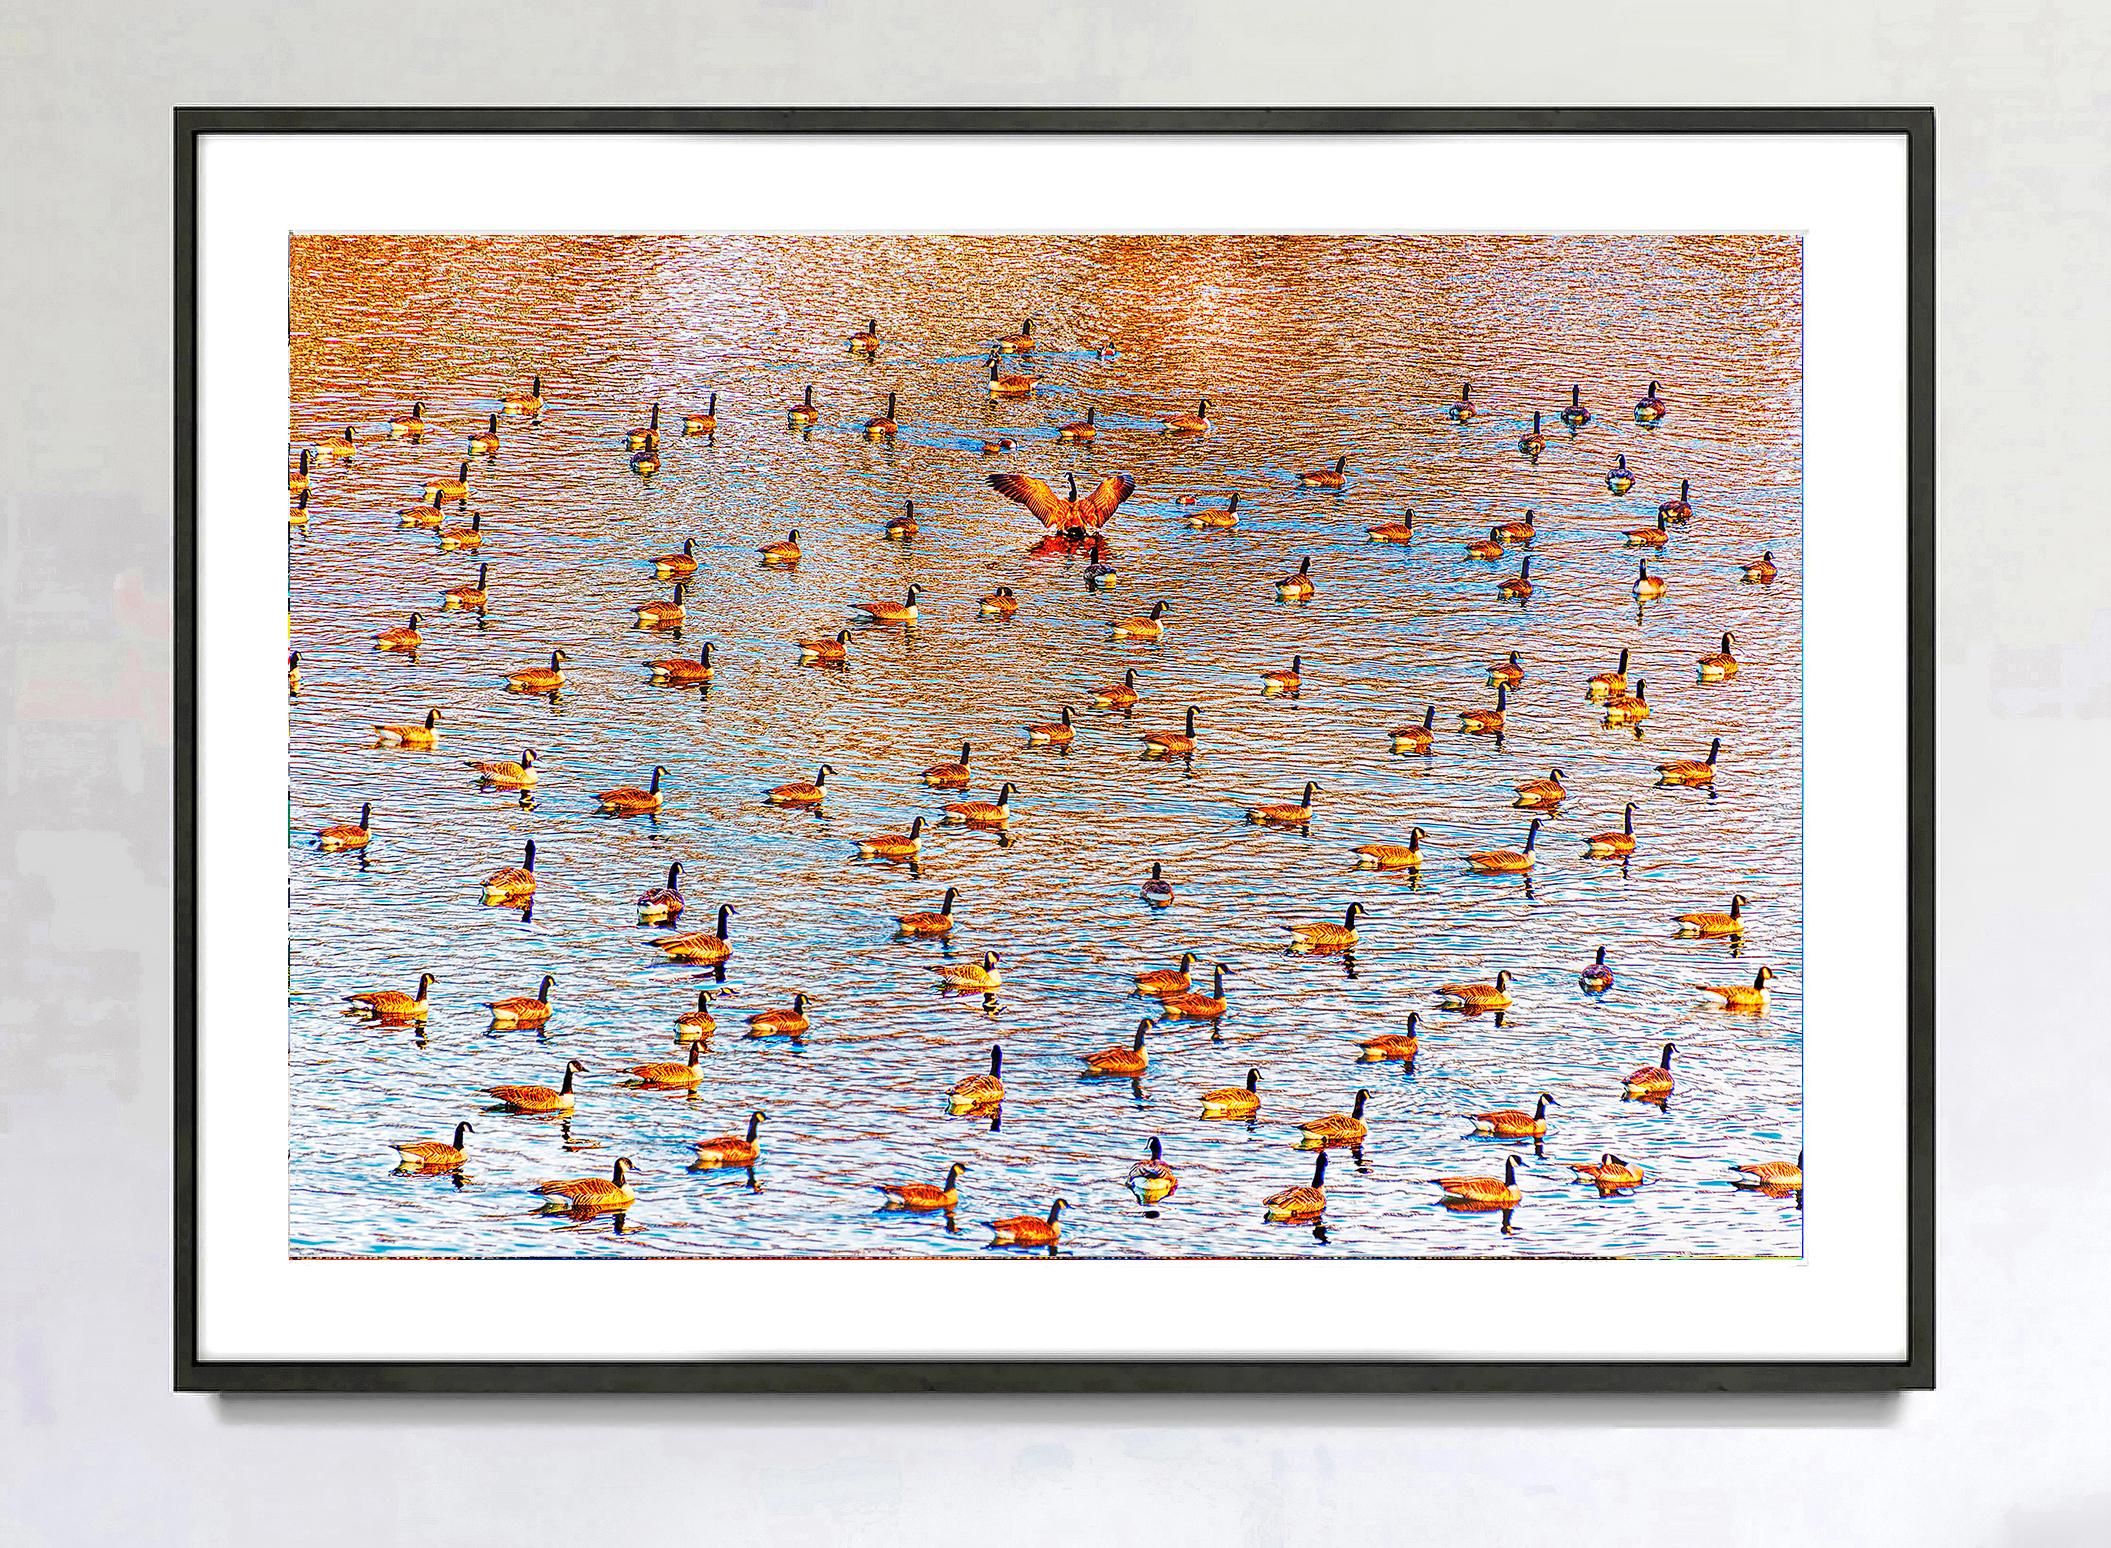 Des canards flottent sur un étang de cannelle en formation libre, formant un motif d'ensemble.  Leur agencement rappelle le travail des artistes minimaux des années 50 et 60.  Pourtant, un seul canard rompt les rangs et se tourne dans l'autre sens,